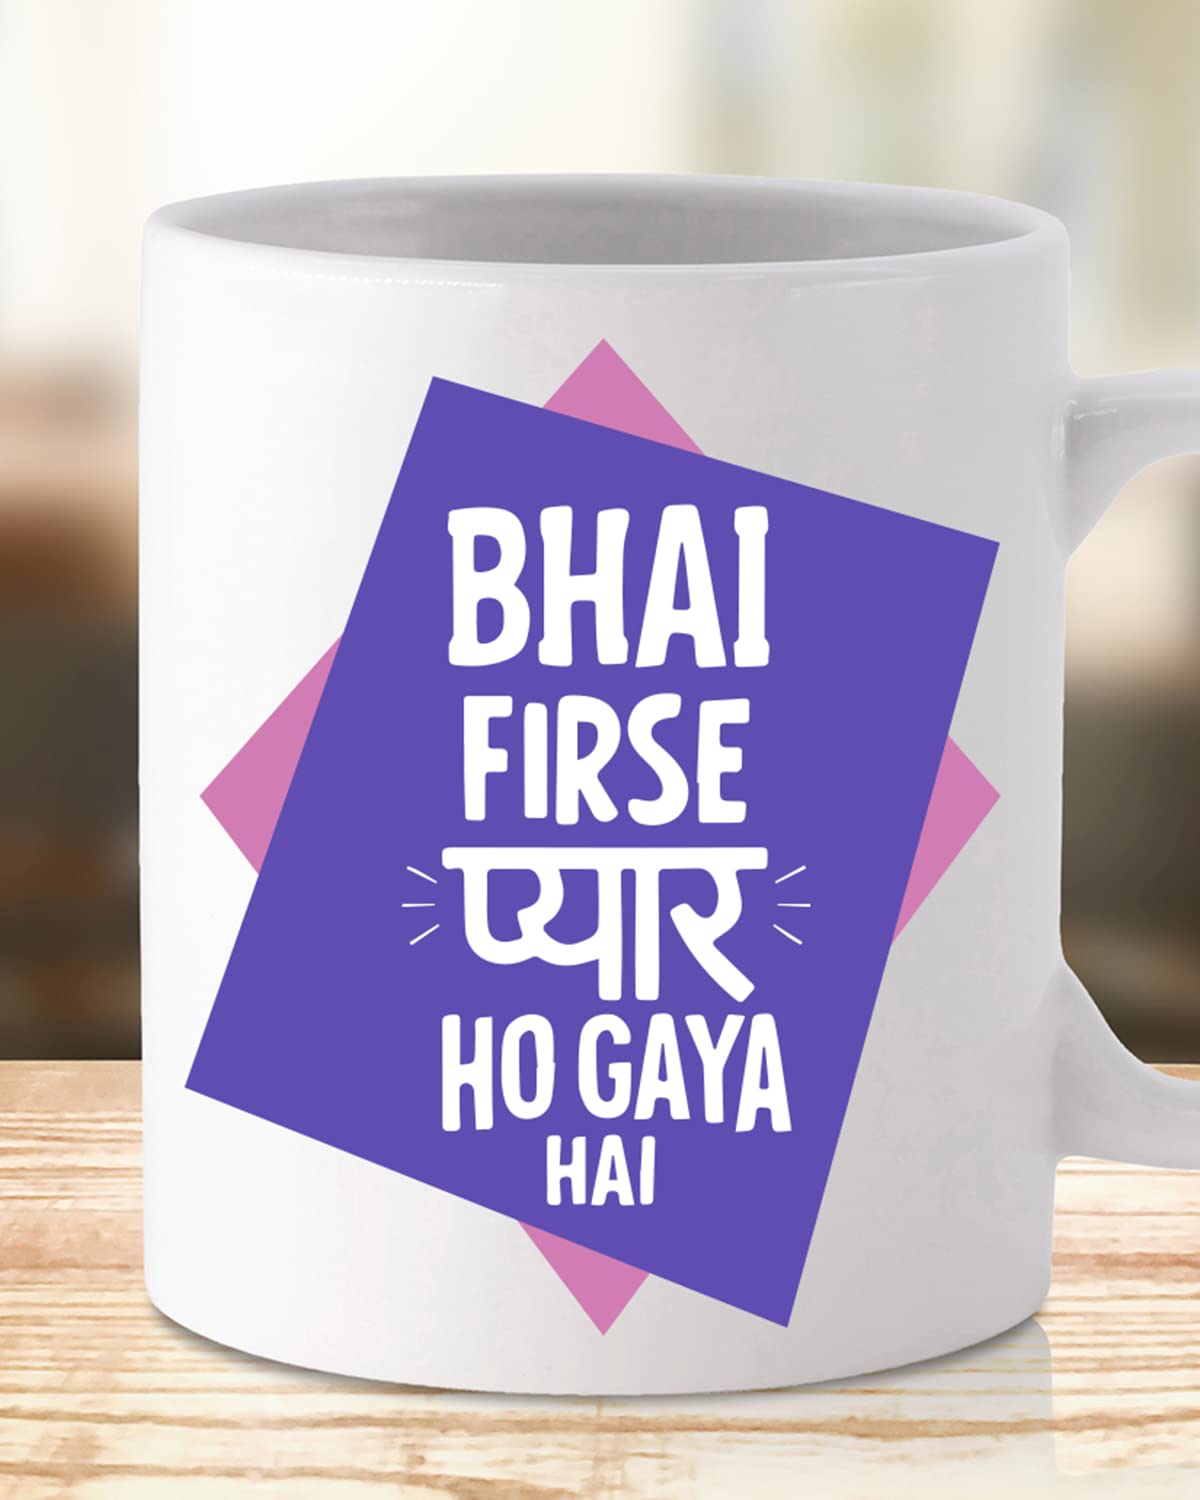 PYAAR HO GYA Coffee Mug - Gift for Friend, Birthday Gift, Birthday Mug, Motivational Quotes Mug, Mugs with Funny & Funky Dialogues, Bollywood Mugs, Funny Mugs for Him & Her